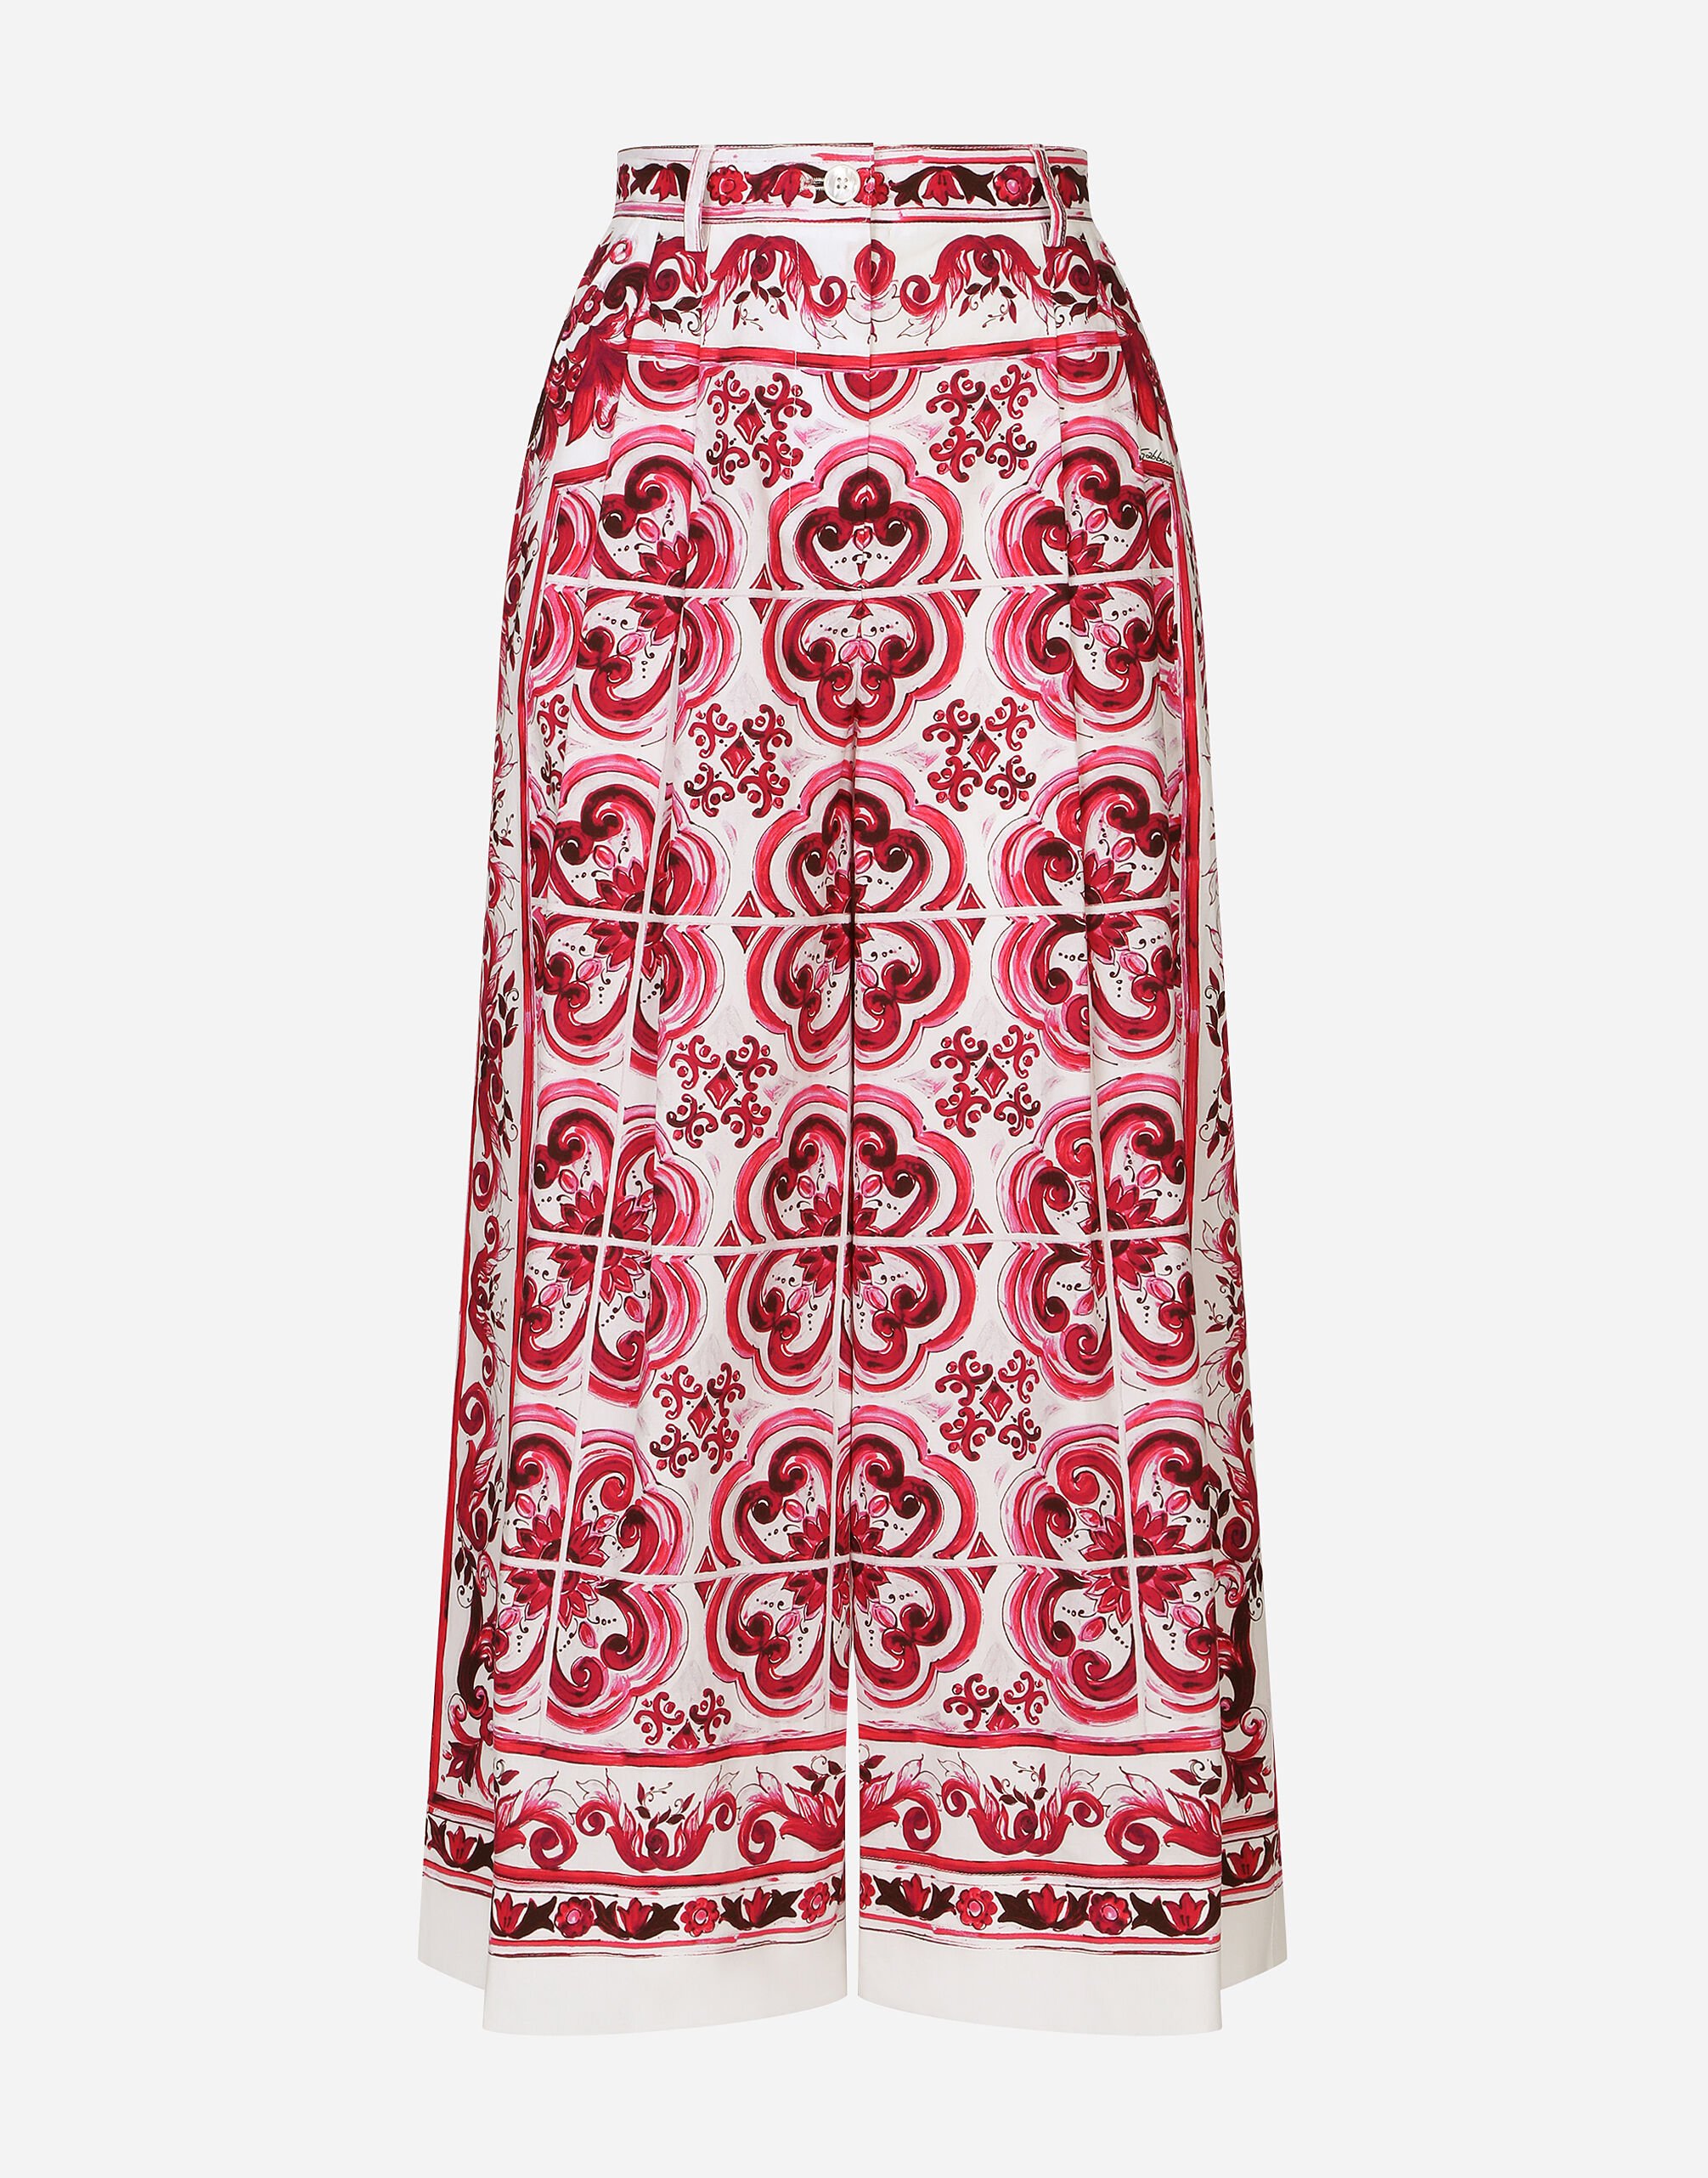 Dolce & Gabbana 마욜리카 프린트 포플린 퀼로트 푸시아 핑크 BB6003A1001